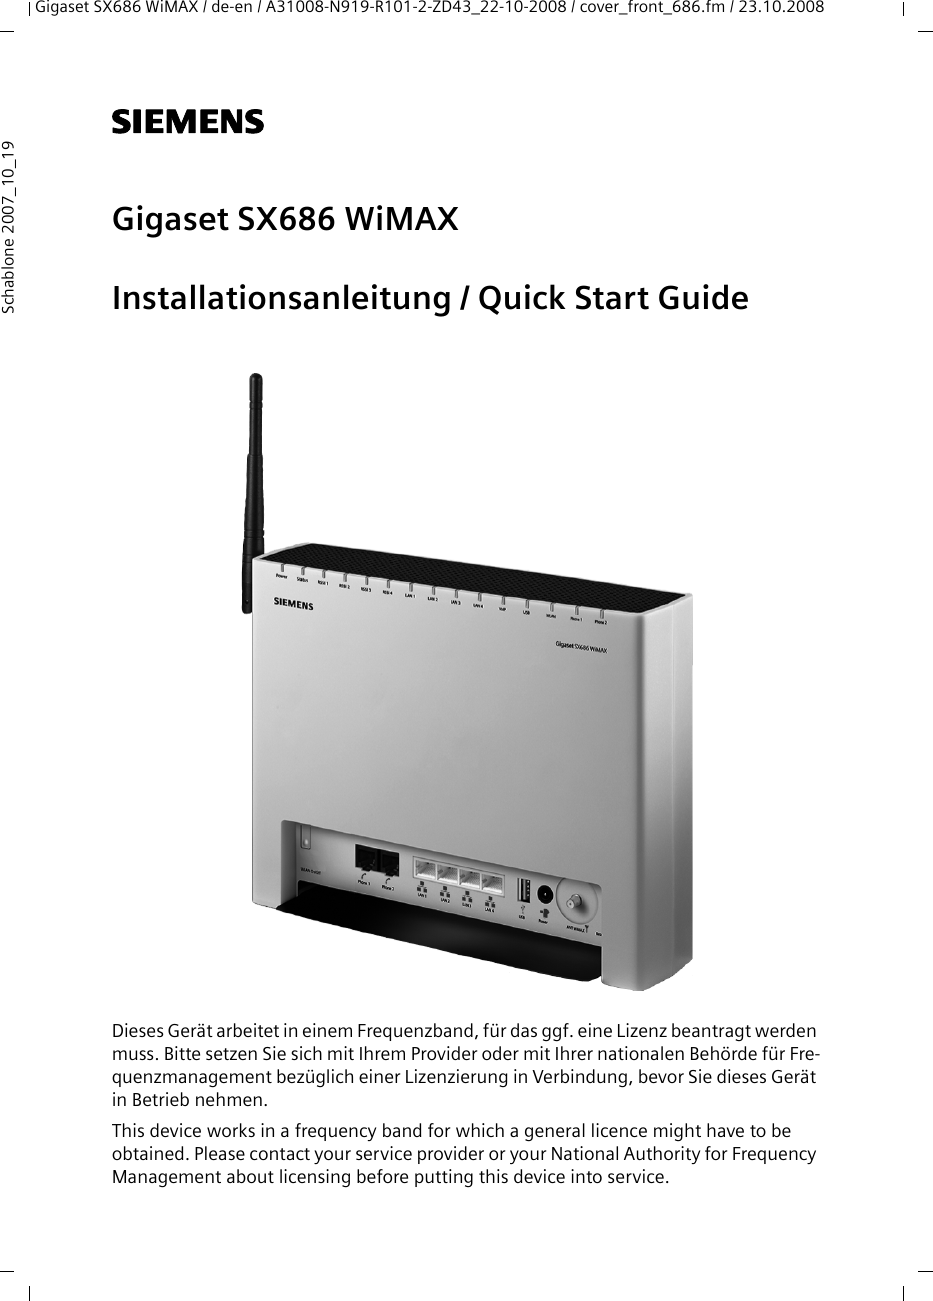 Gigaset SX686 WiMAX / de-en / A31008-N919-R101-2-ZD43_22-10-2008 / cover_front_686.fm / 23.10.2008Schablone 2007_10_19s Gigaset SX686 WiMAXInstallationsanleitung / Quick Start GuideDieses Gerät arbeitet in einem Frequenzband, für das ggf. eine Lizenz beantragt werden muss. Bitte setzen Sie sich mit Ihrem Provider oder mit Ihrer nationalen Behörde für Fre-quenzmanagement bezüglich einer Lizenzierung in Verbindung, bevor Sie dieses Gerät in Betrieb nehmen.This device works in a frequency band for which a general licence might have to be obtained. Please contact your service provider or your National Authority for Frequency Management about licensing before putting this device into service.